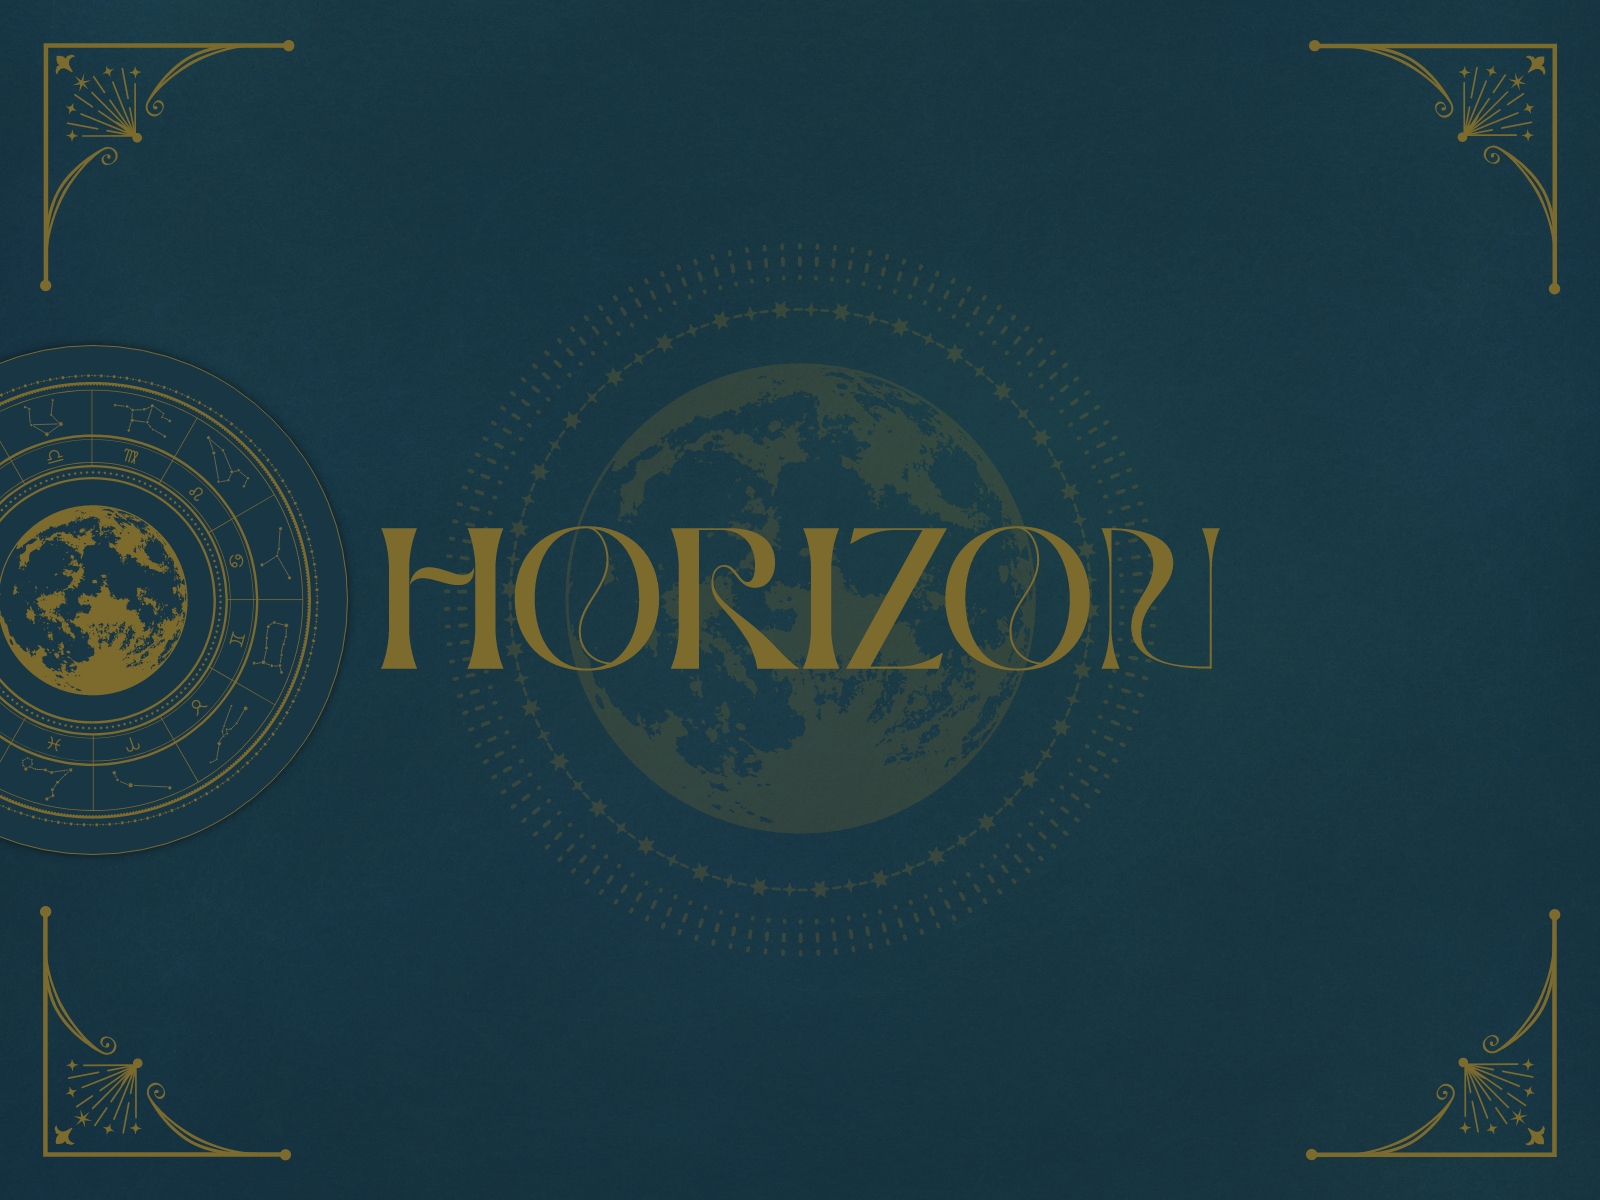 A menu themed around the 12 zodiac signs